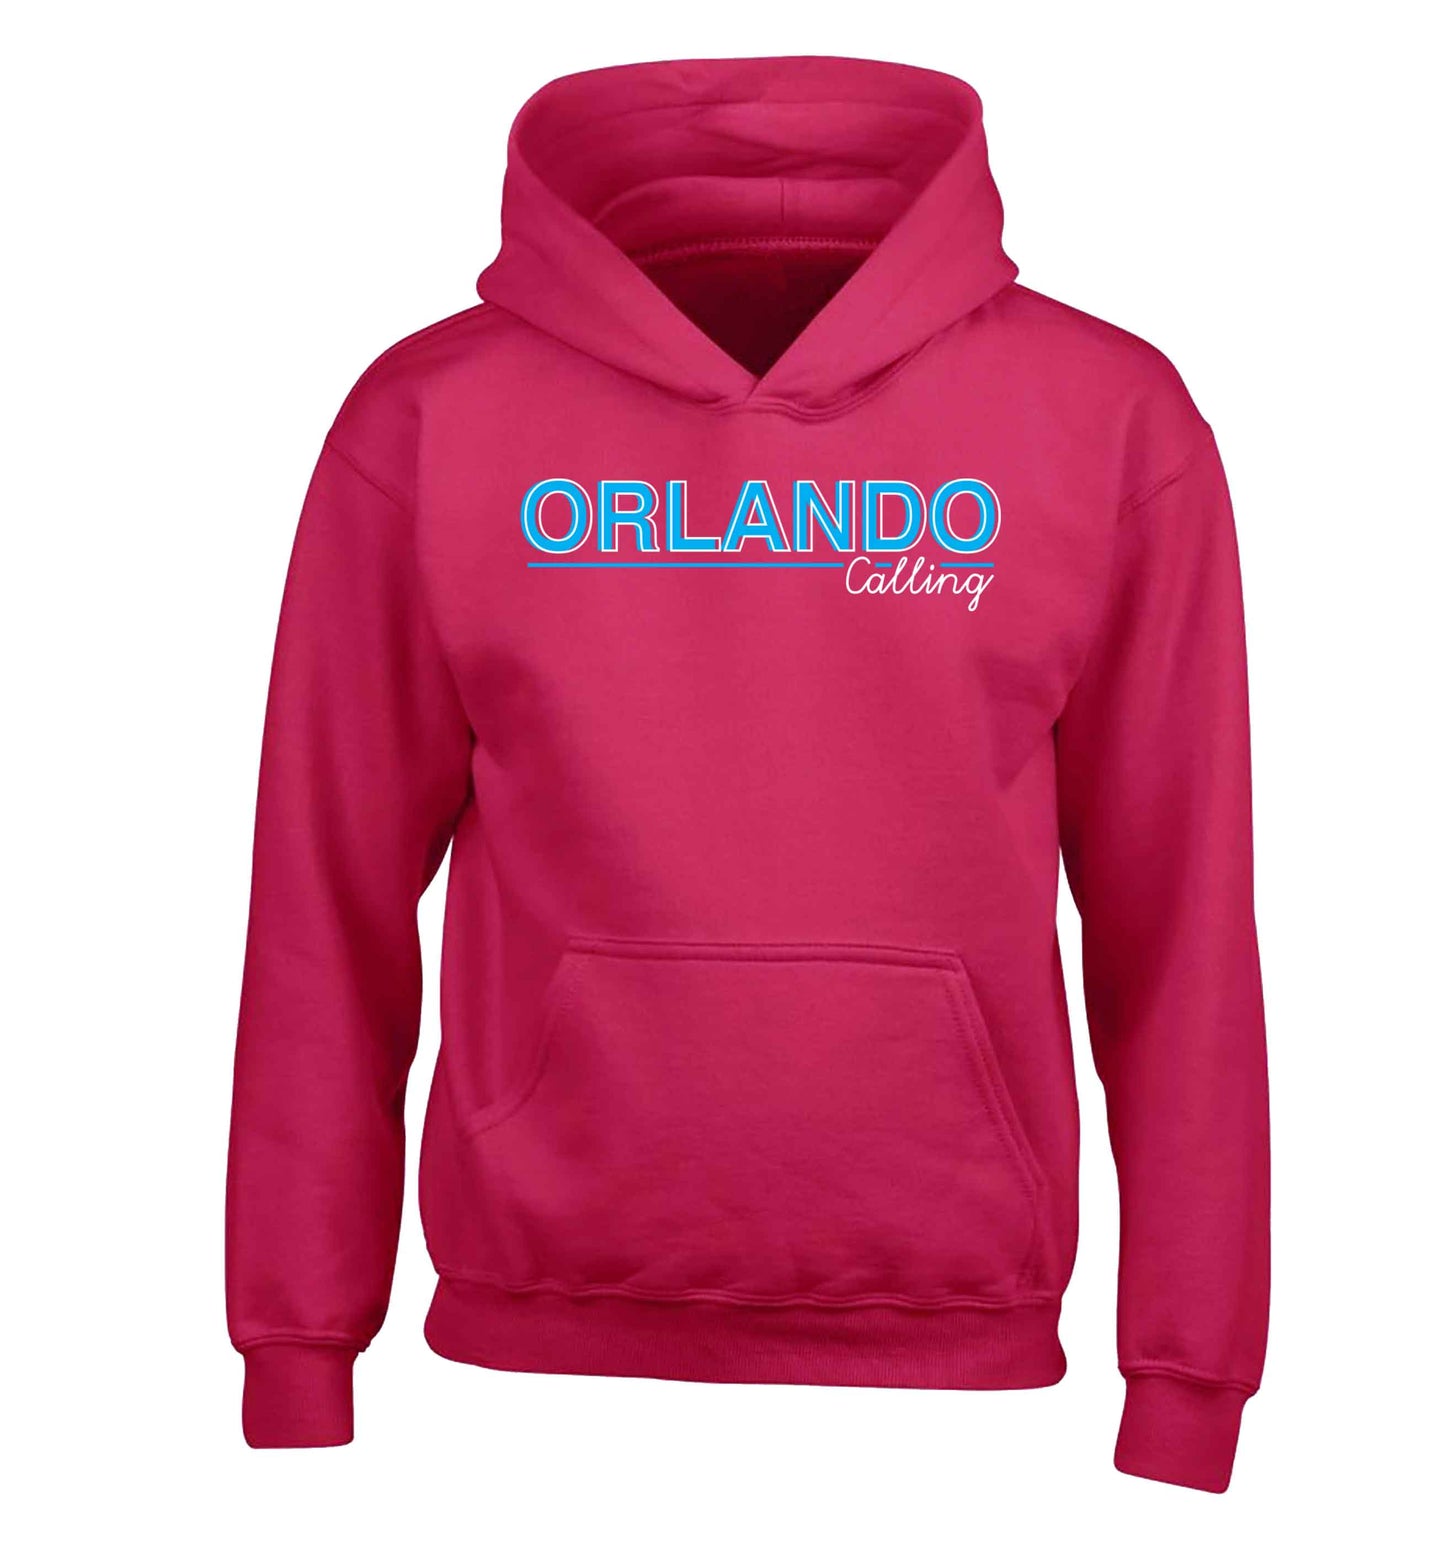 Orlando calling children's pink hoodie 12-13 Years